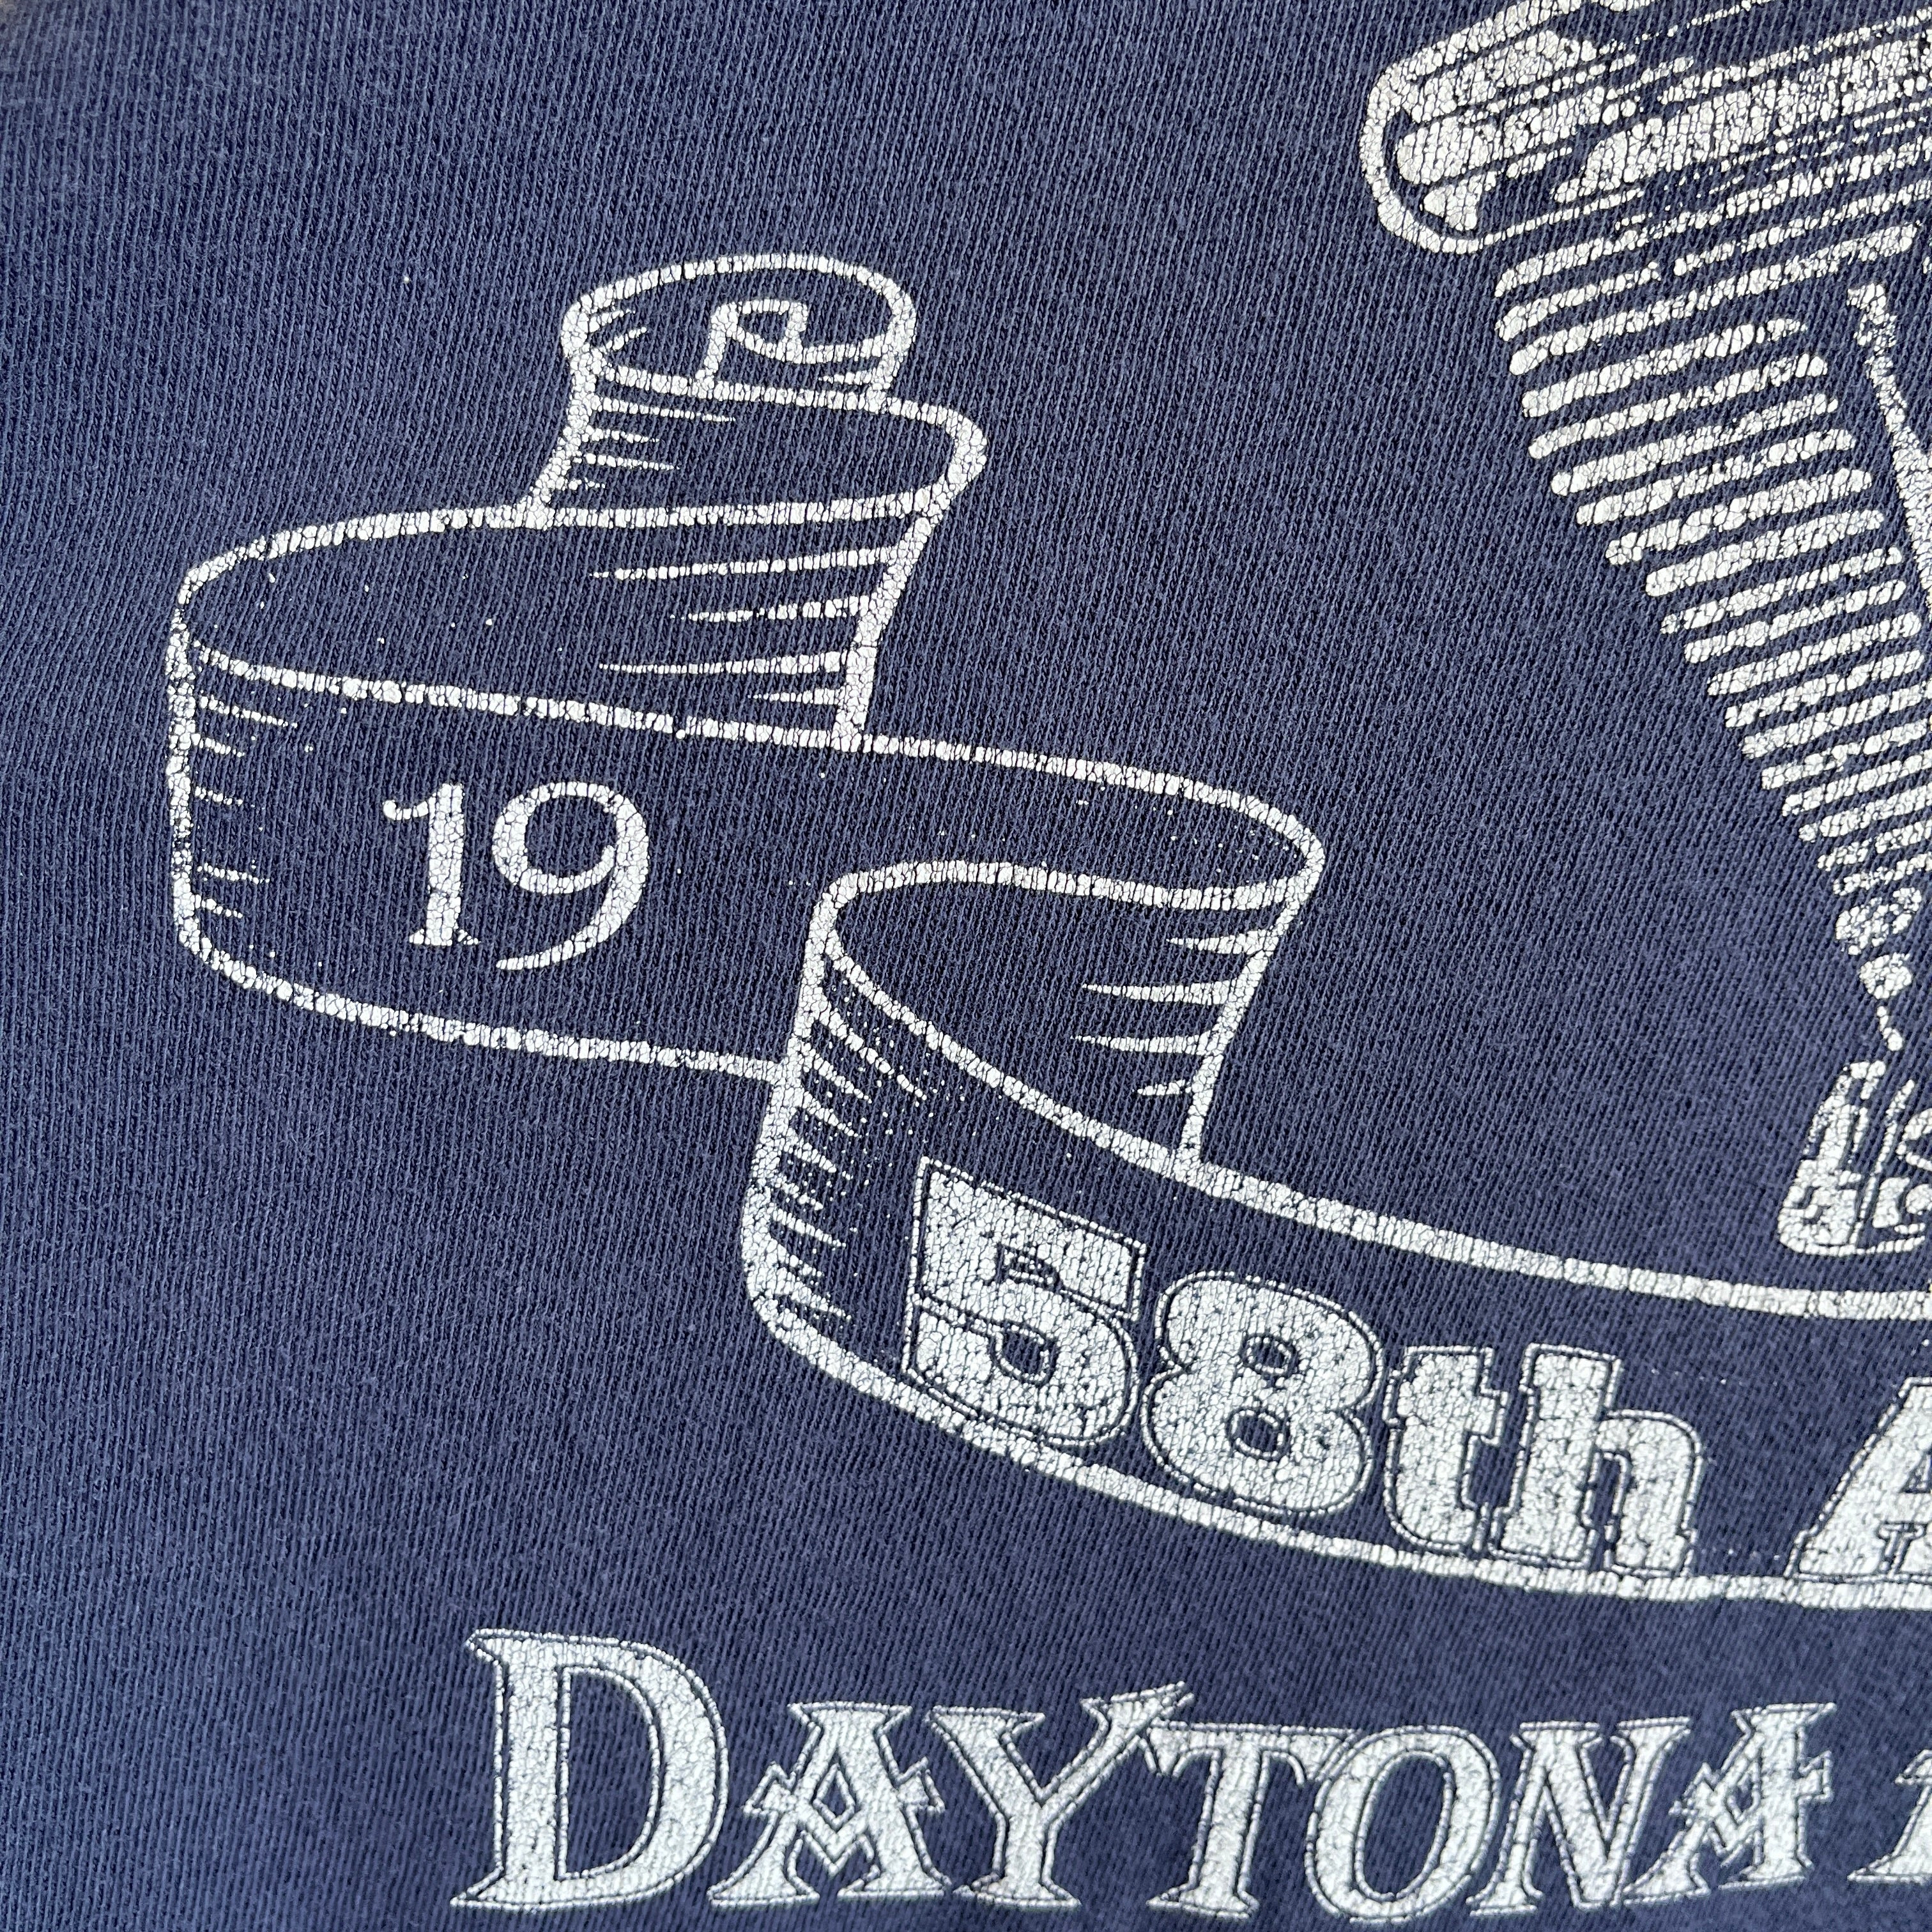 1999  Boxy Daytona Beach 58th Annual Bike Week - The. Backside!!